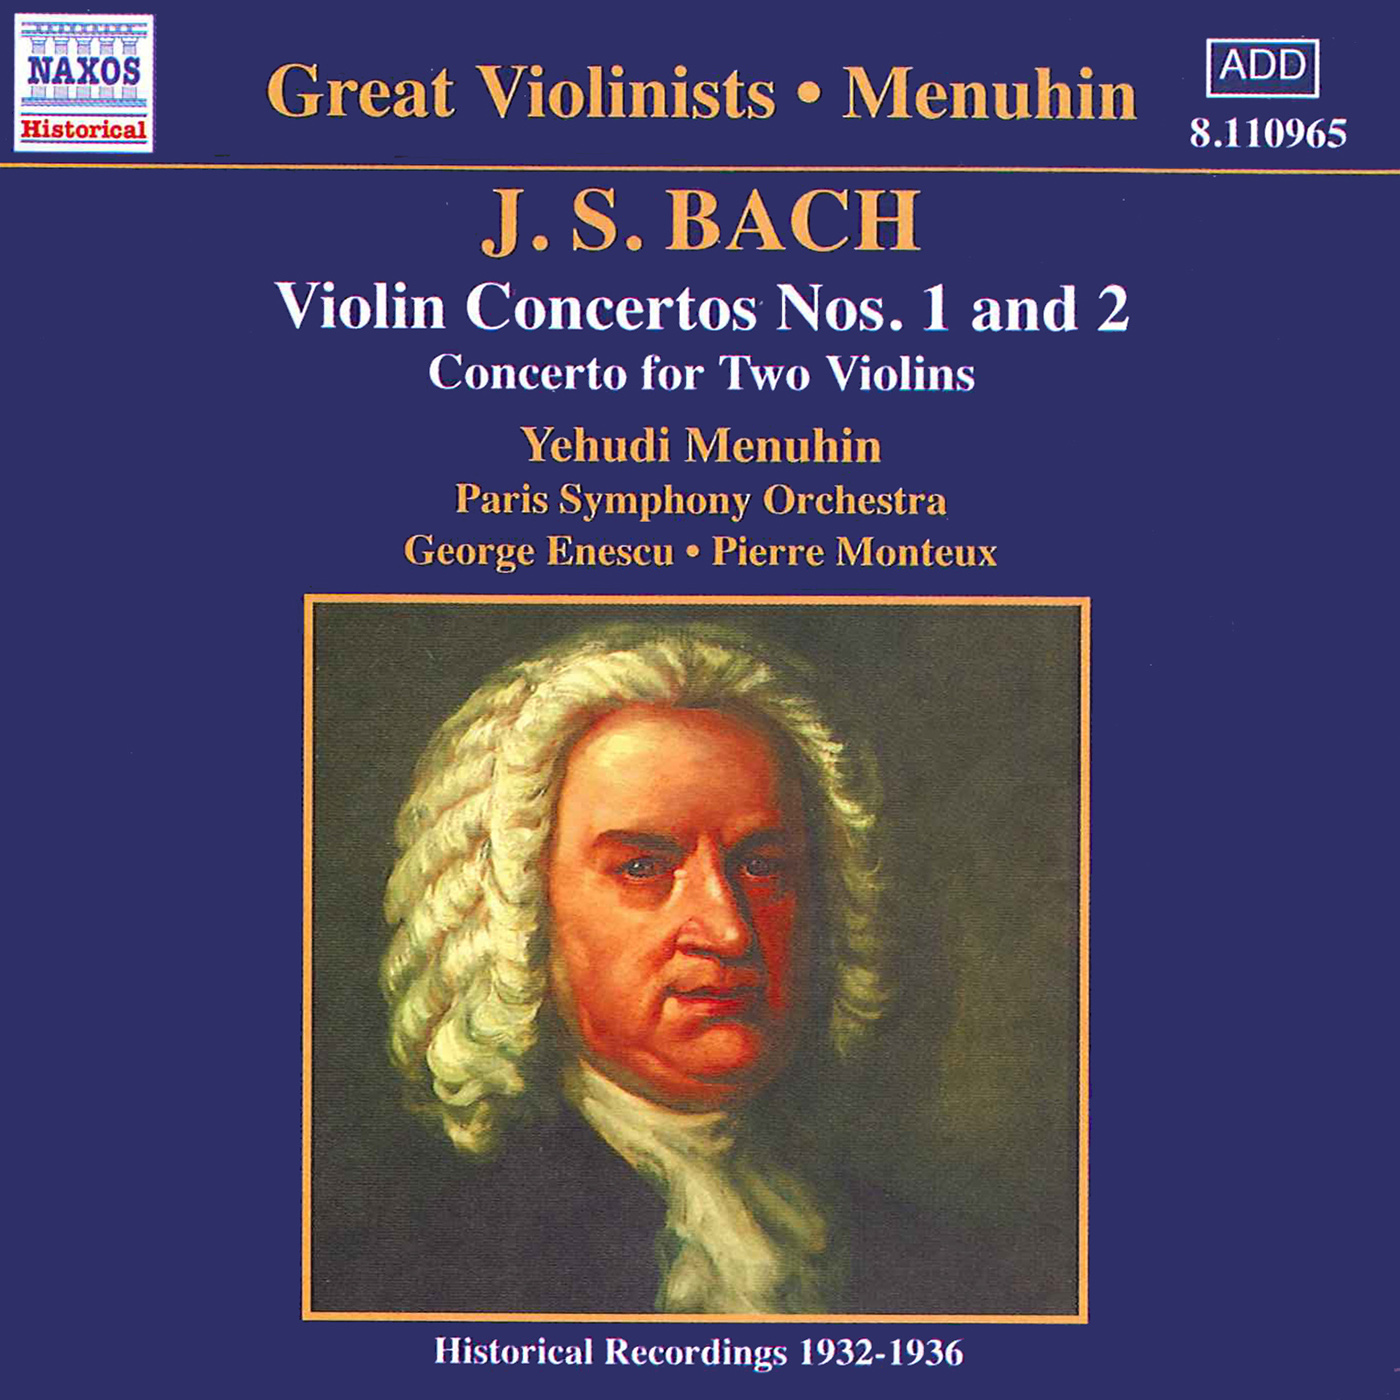 Violin Concerto in A Minor, BWV 1041: I. Allegro (non tanto)